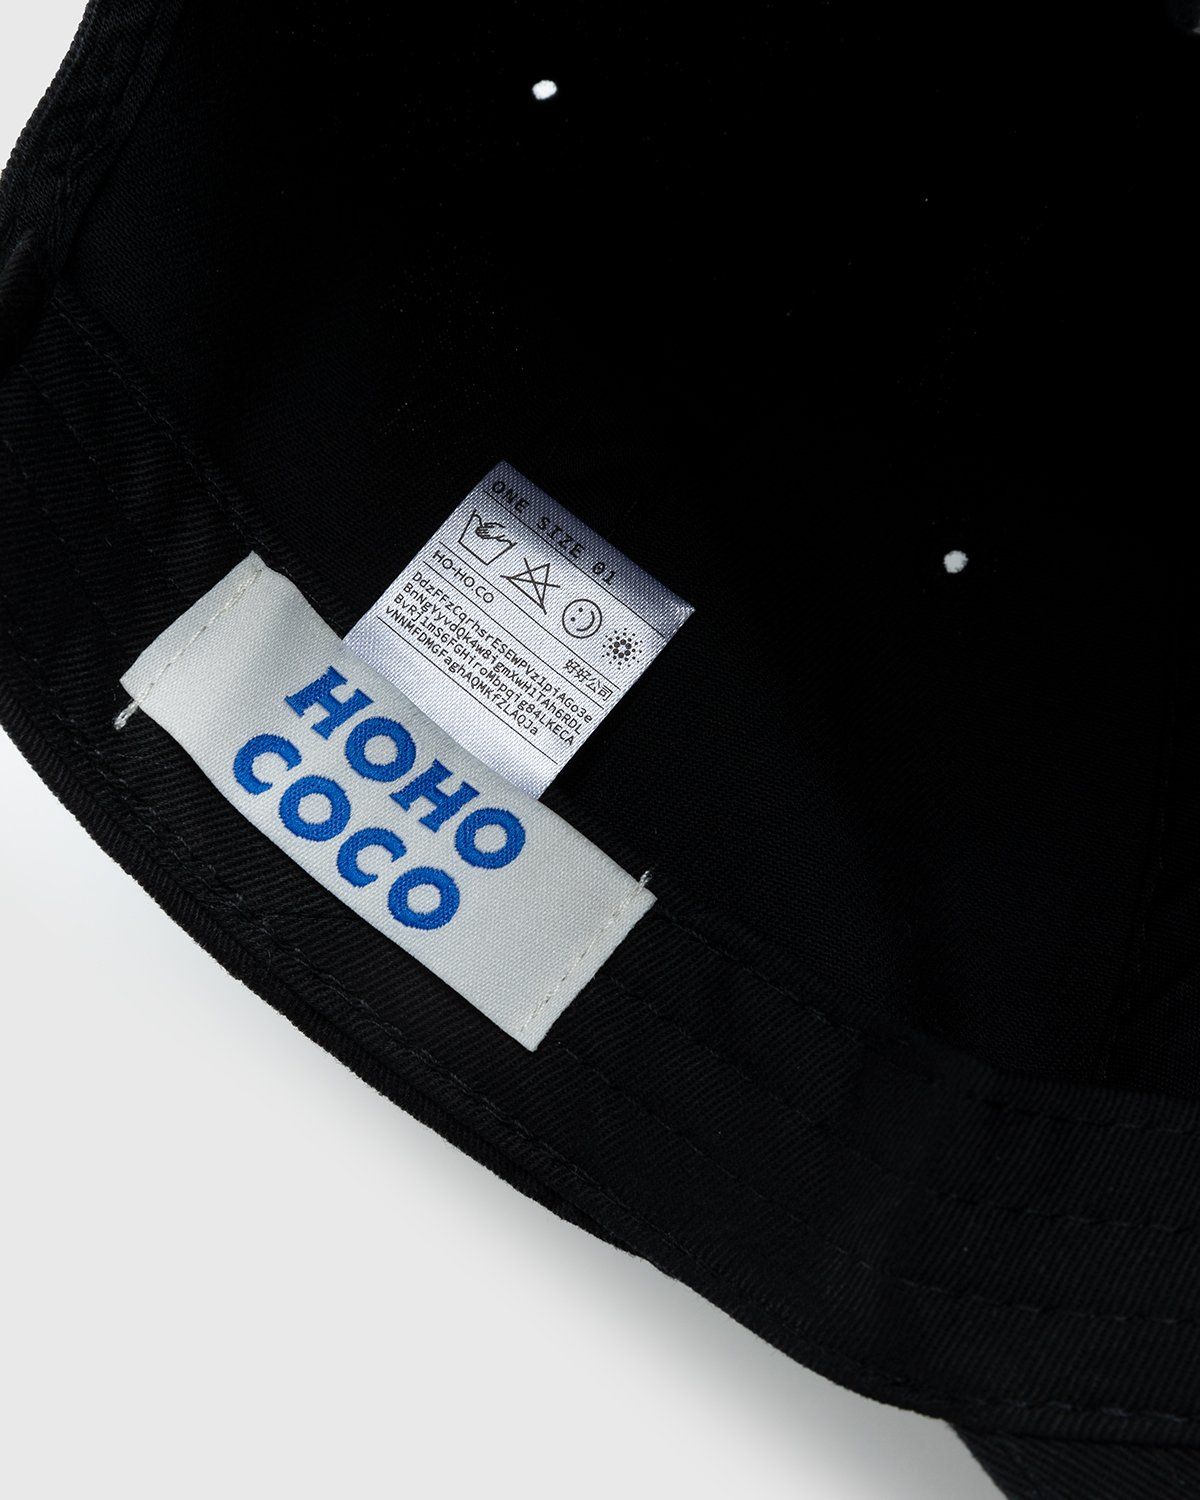 HO HO COCO – Executive Assistant Cap Black - Caps - Black - Image 4